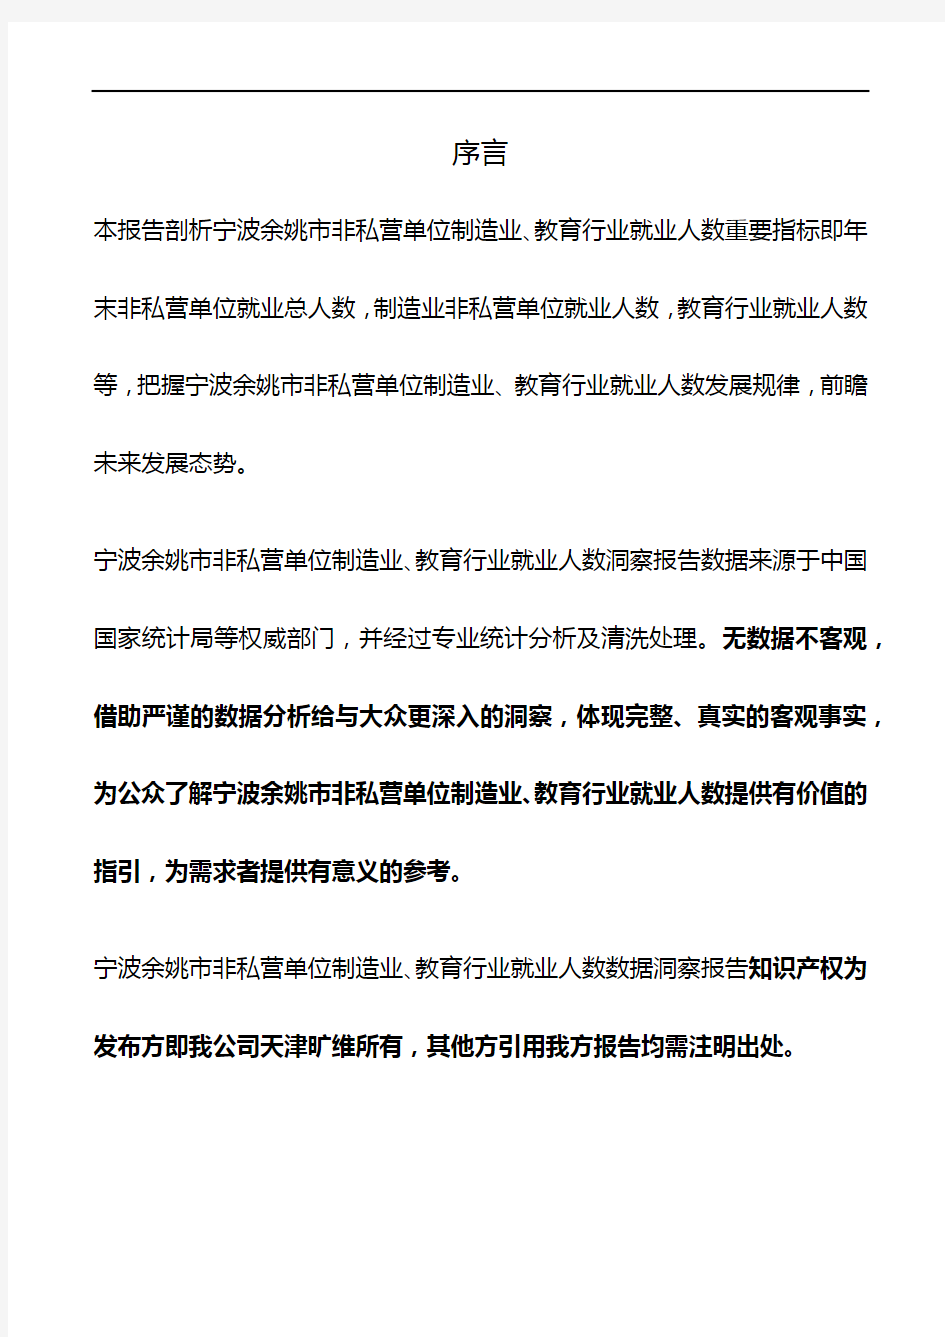 浙江省宁波余姚市非私营单位制造业、教育行业就业人数3年数据洞察报告2020版